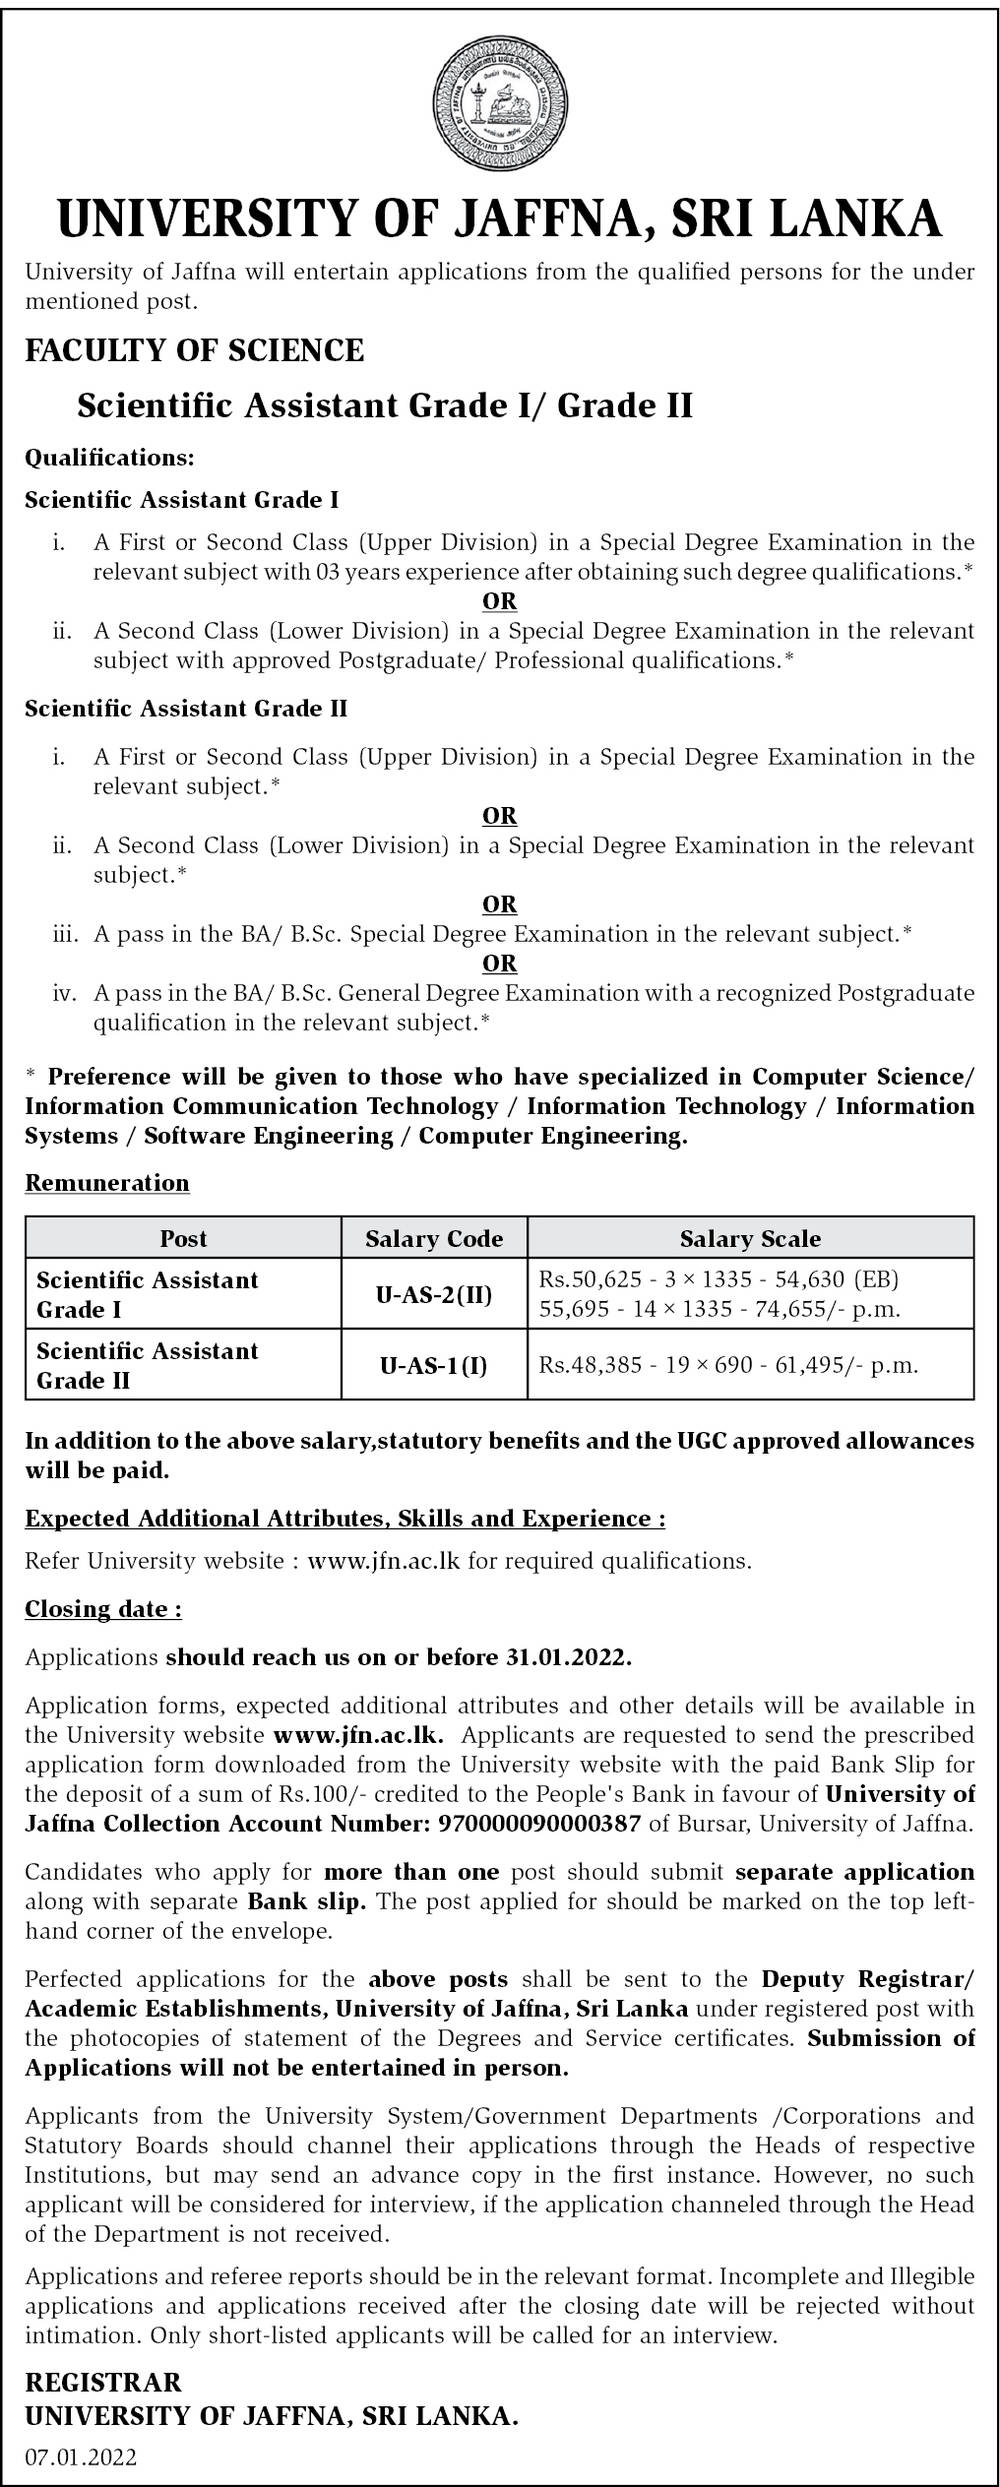 Scientific Assistant Job Vacancy in University of Jaffna English Details